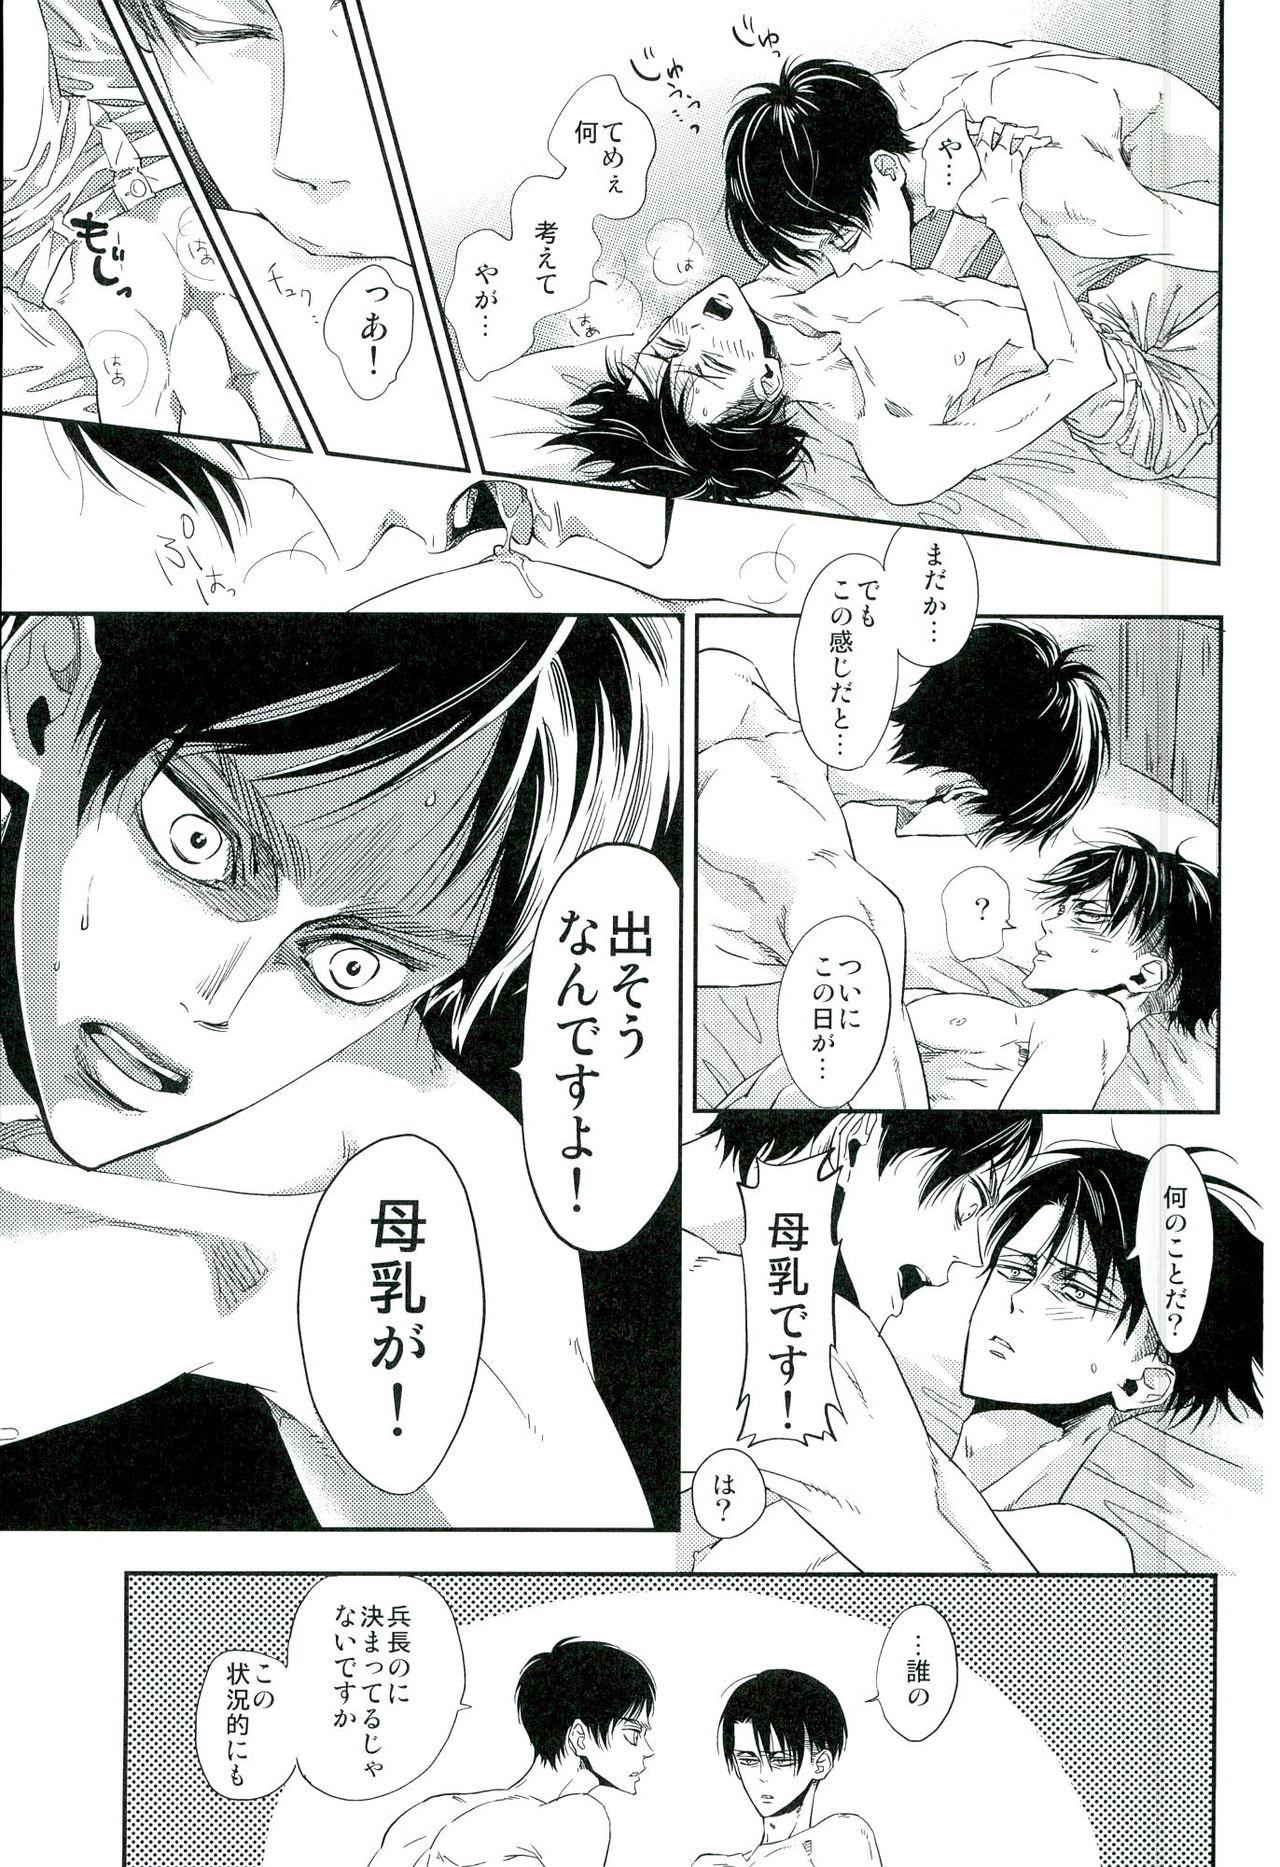 Bisex 兵長のおっぱいから母乳が出るところが見たい! - Shingeki no kyojin Asslicking - Page 4